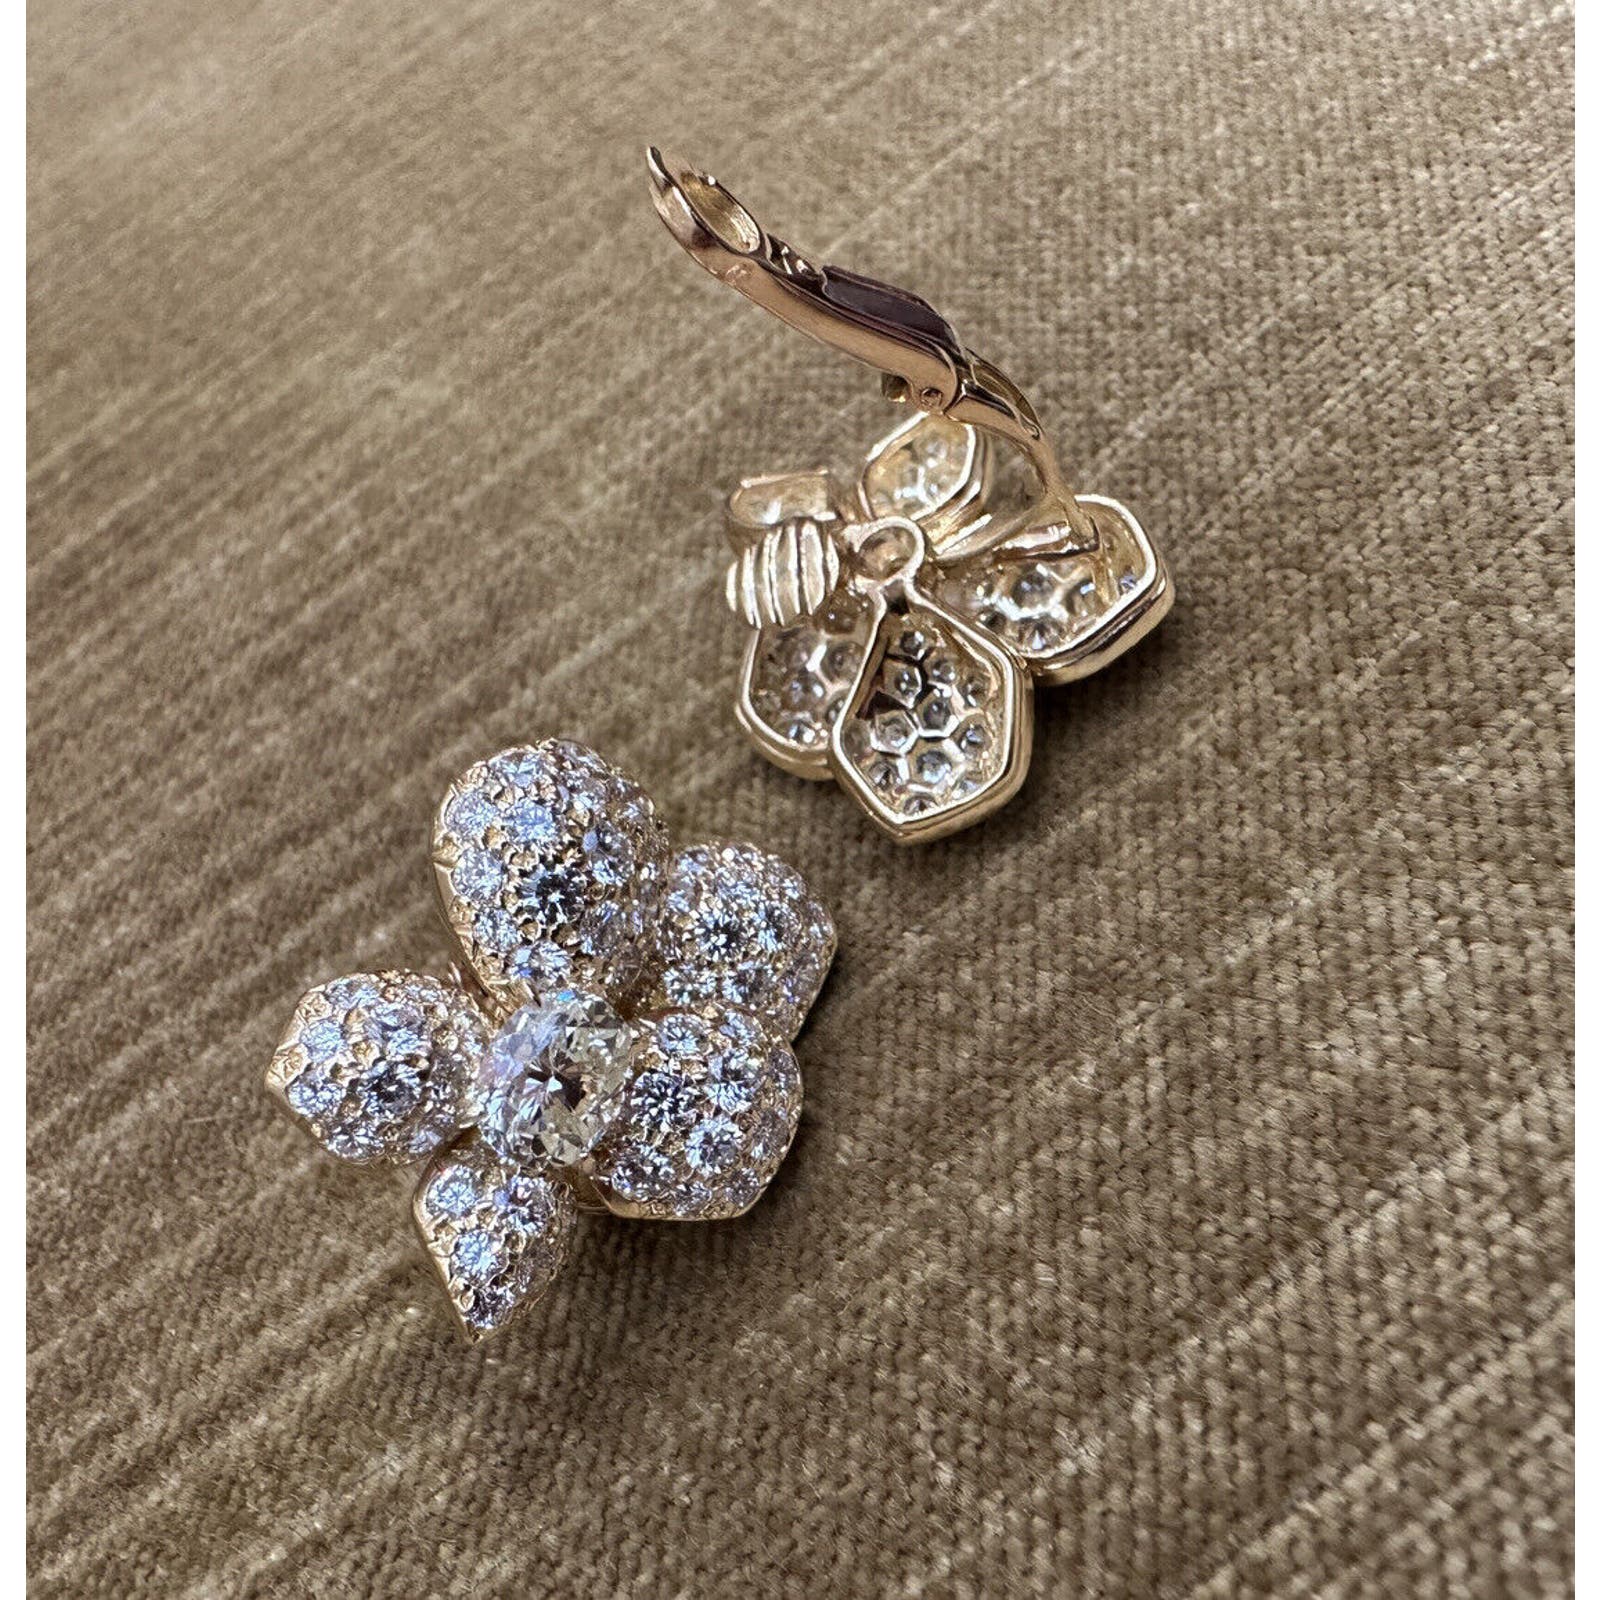 French GIA Pavé Diamond Asymmetrical Flower Earrings in 18k Yellow Gold -HM2478V